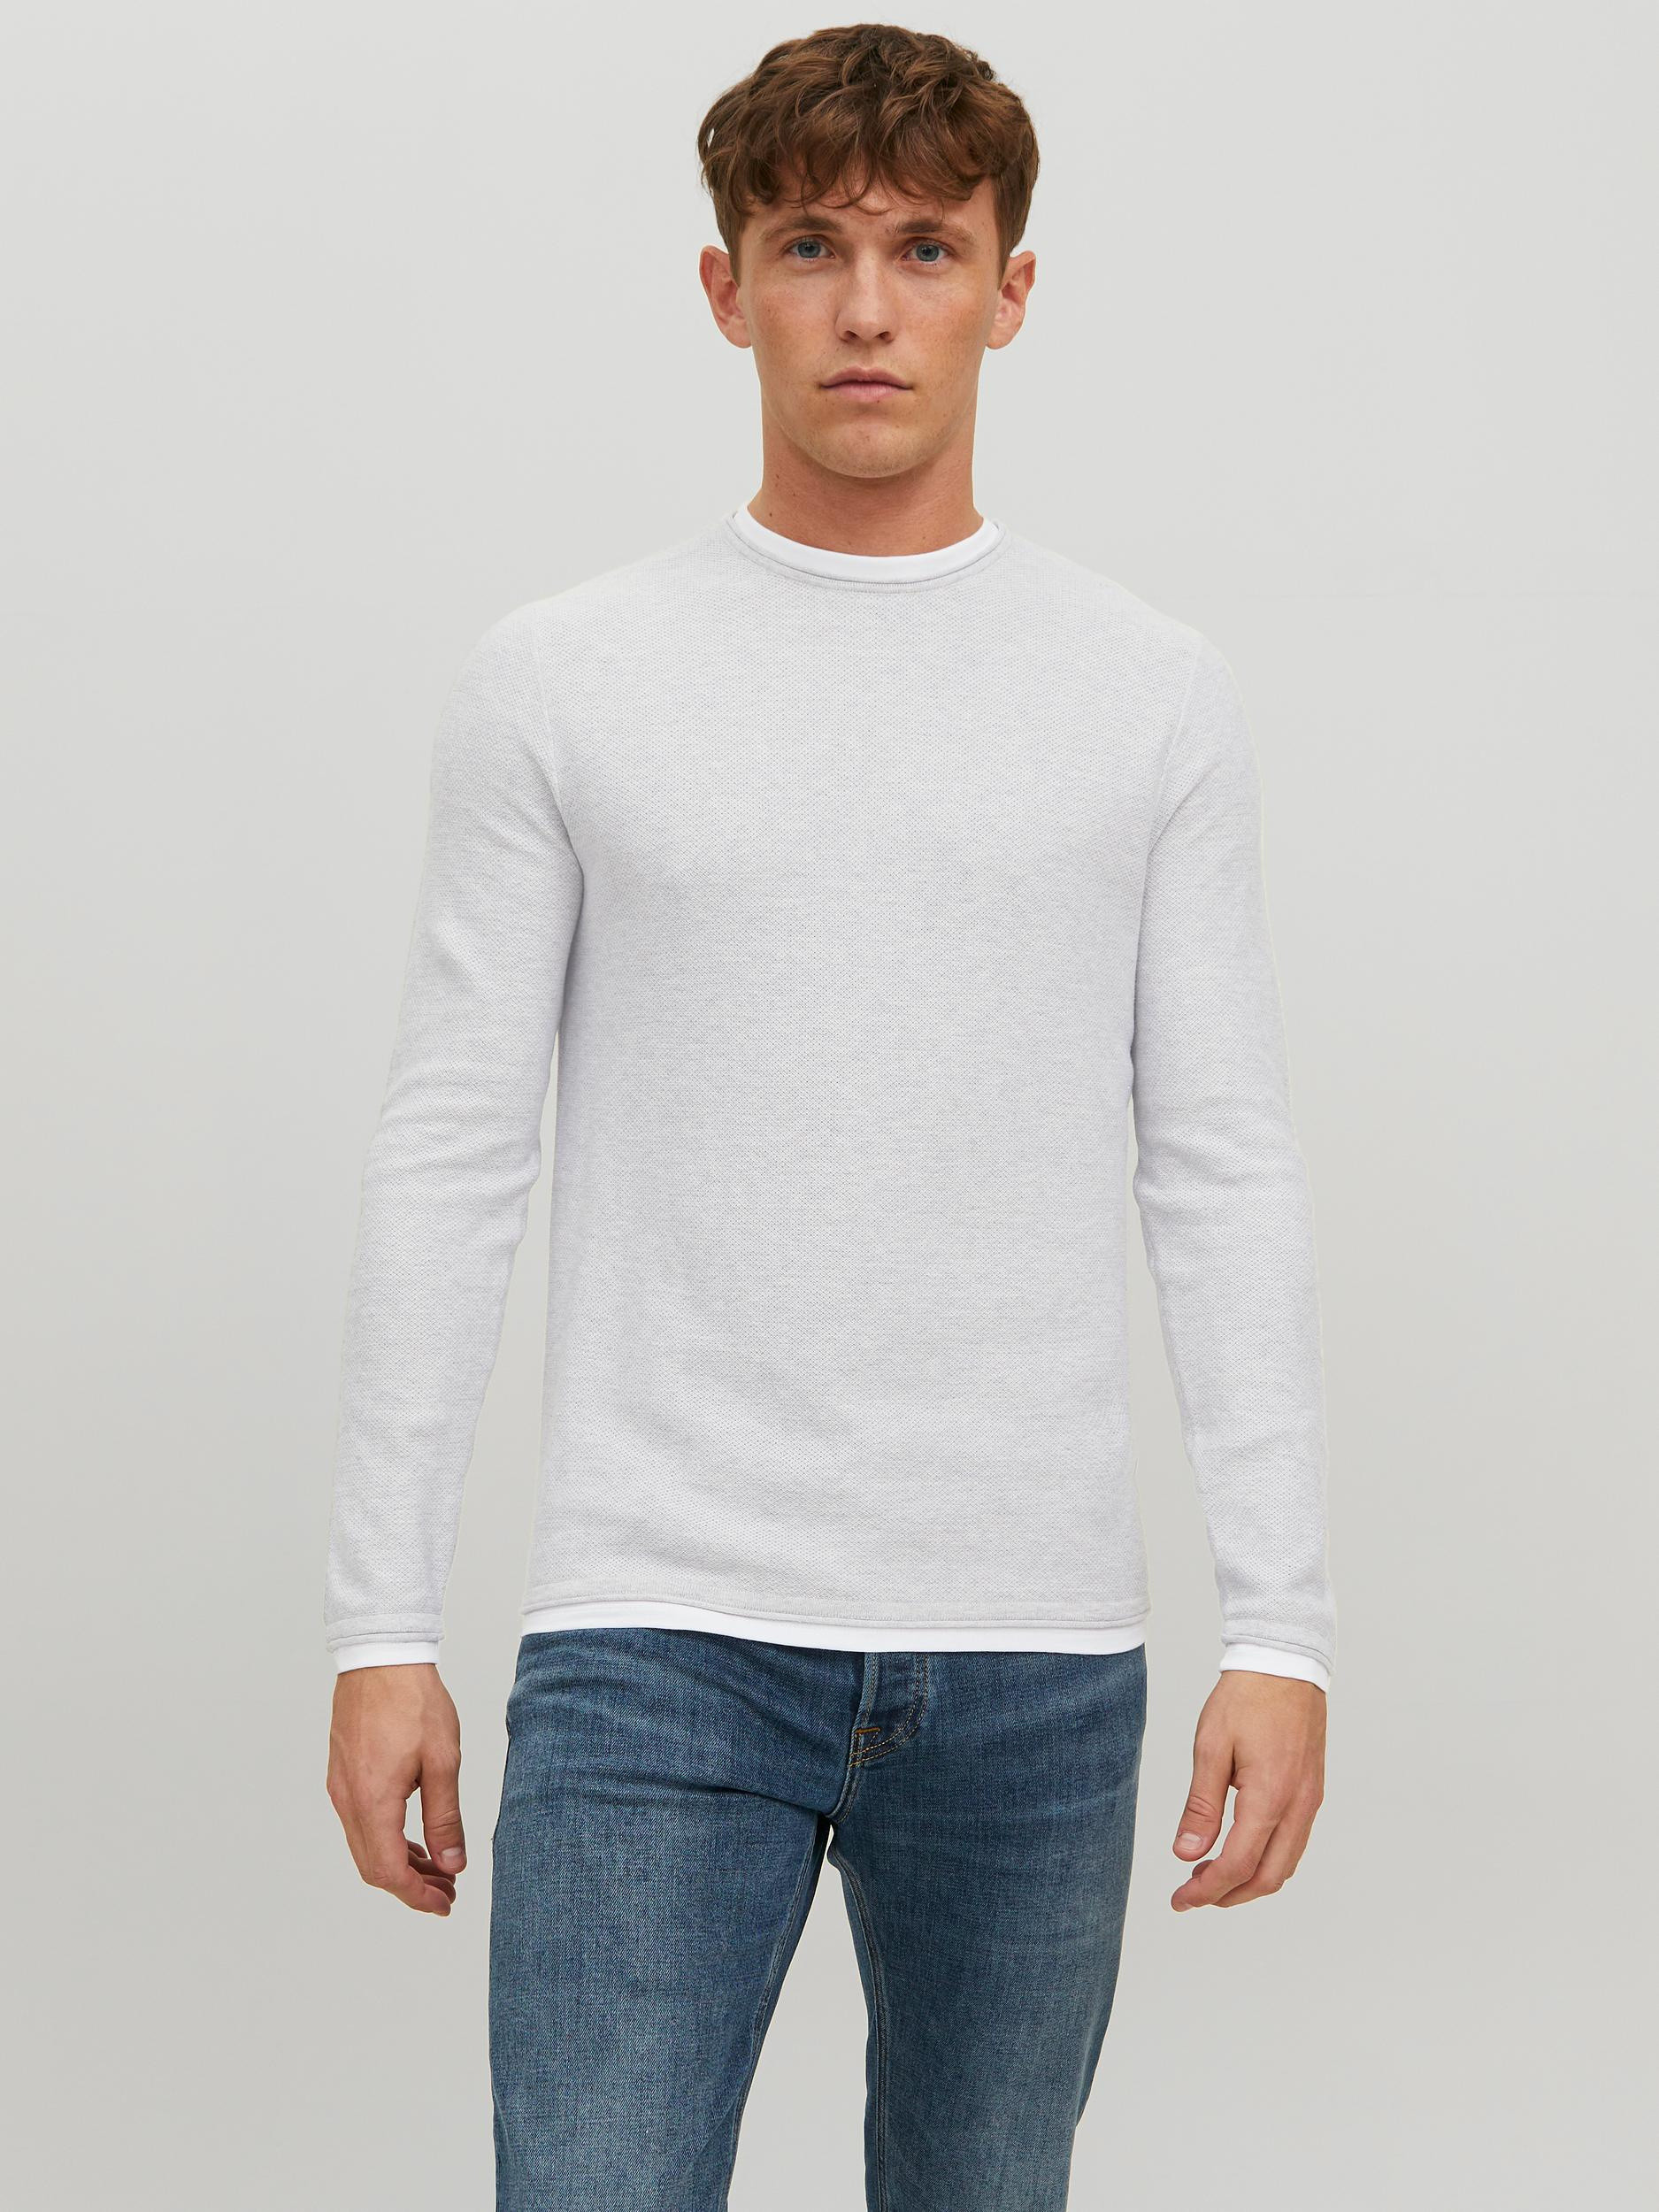 Jack & Jones - Cotton pullover, Light Grey, large image number 4